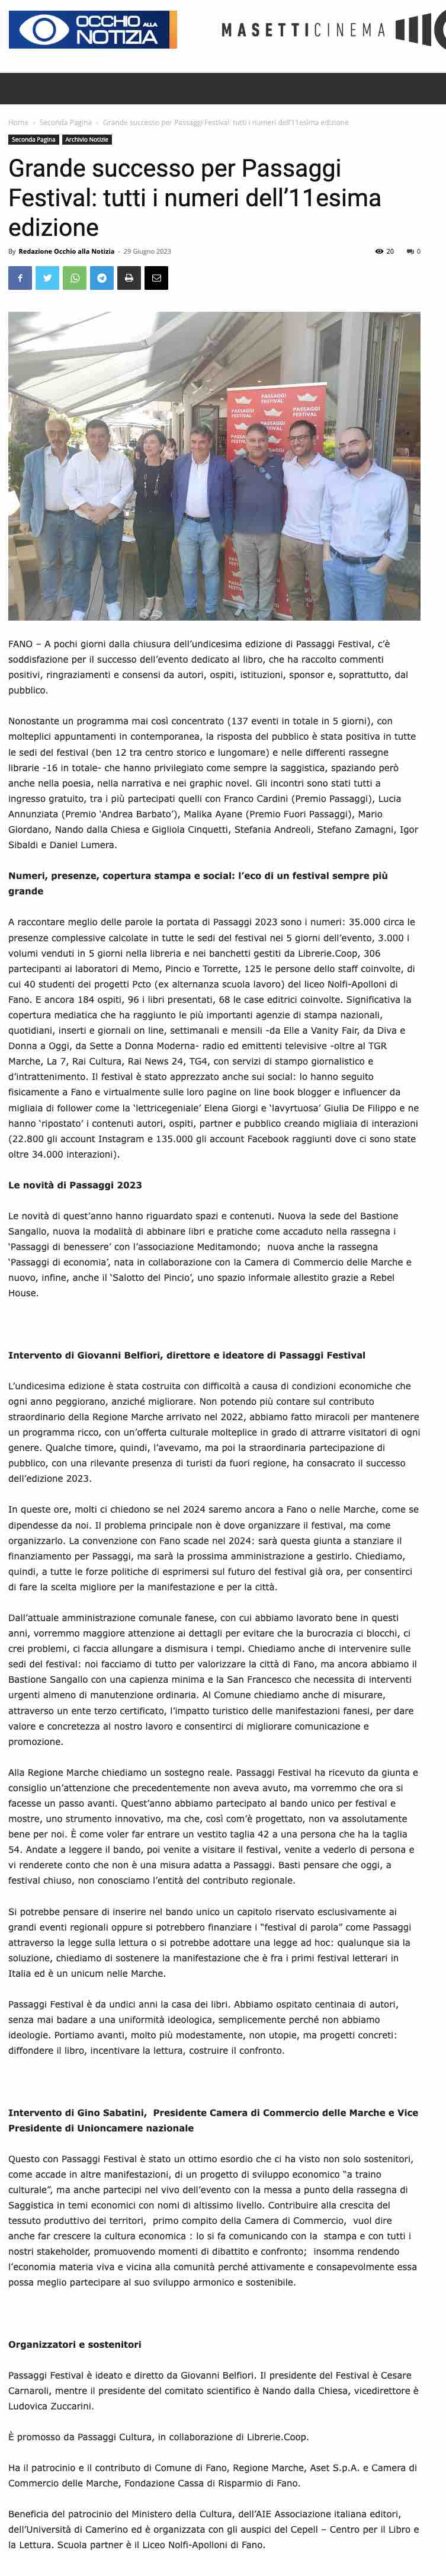 Occhio alla Notizia – Grande successo per Passaggi Festival: tutti i numeri dell’11esima edizione